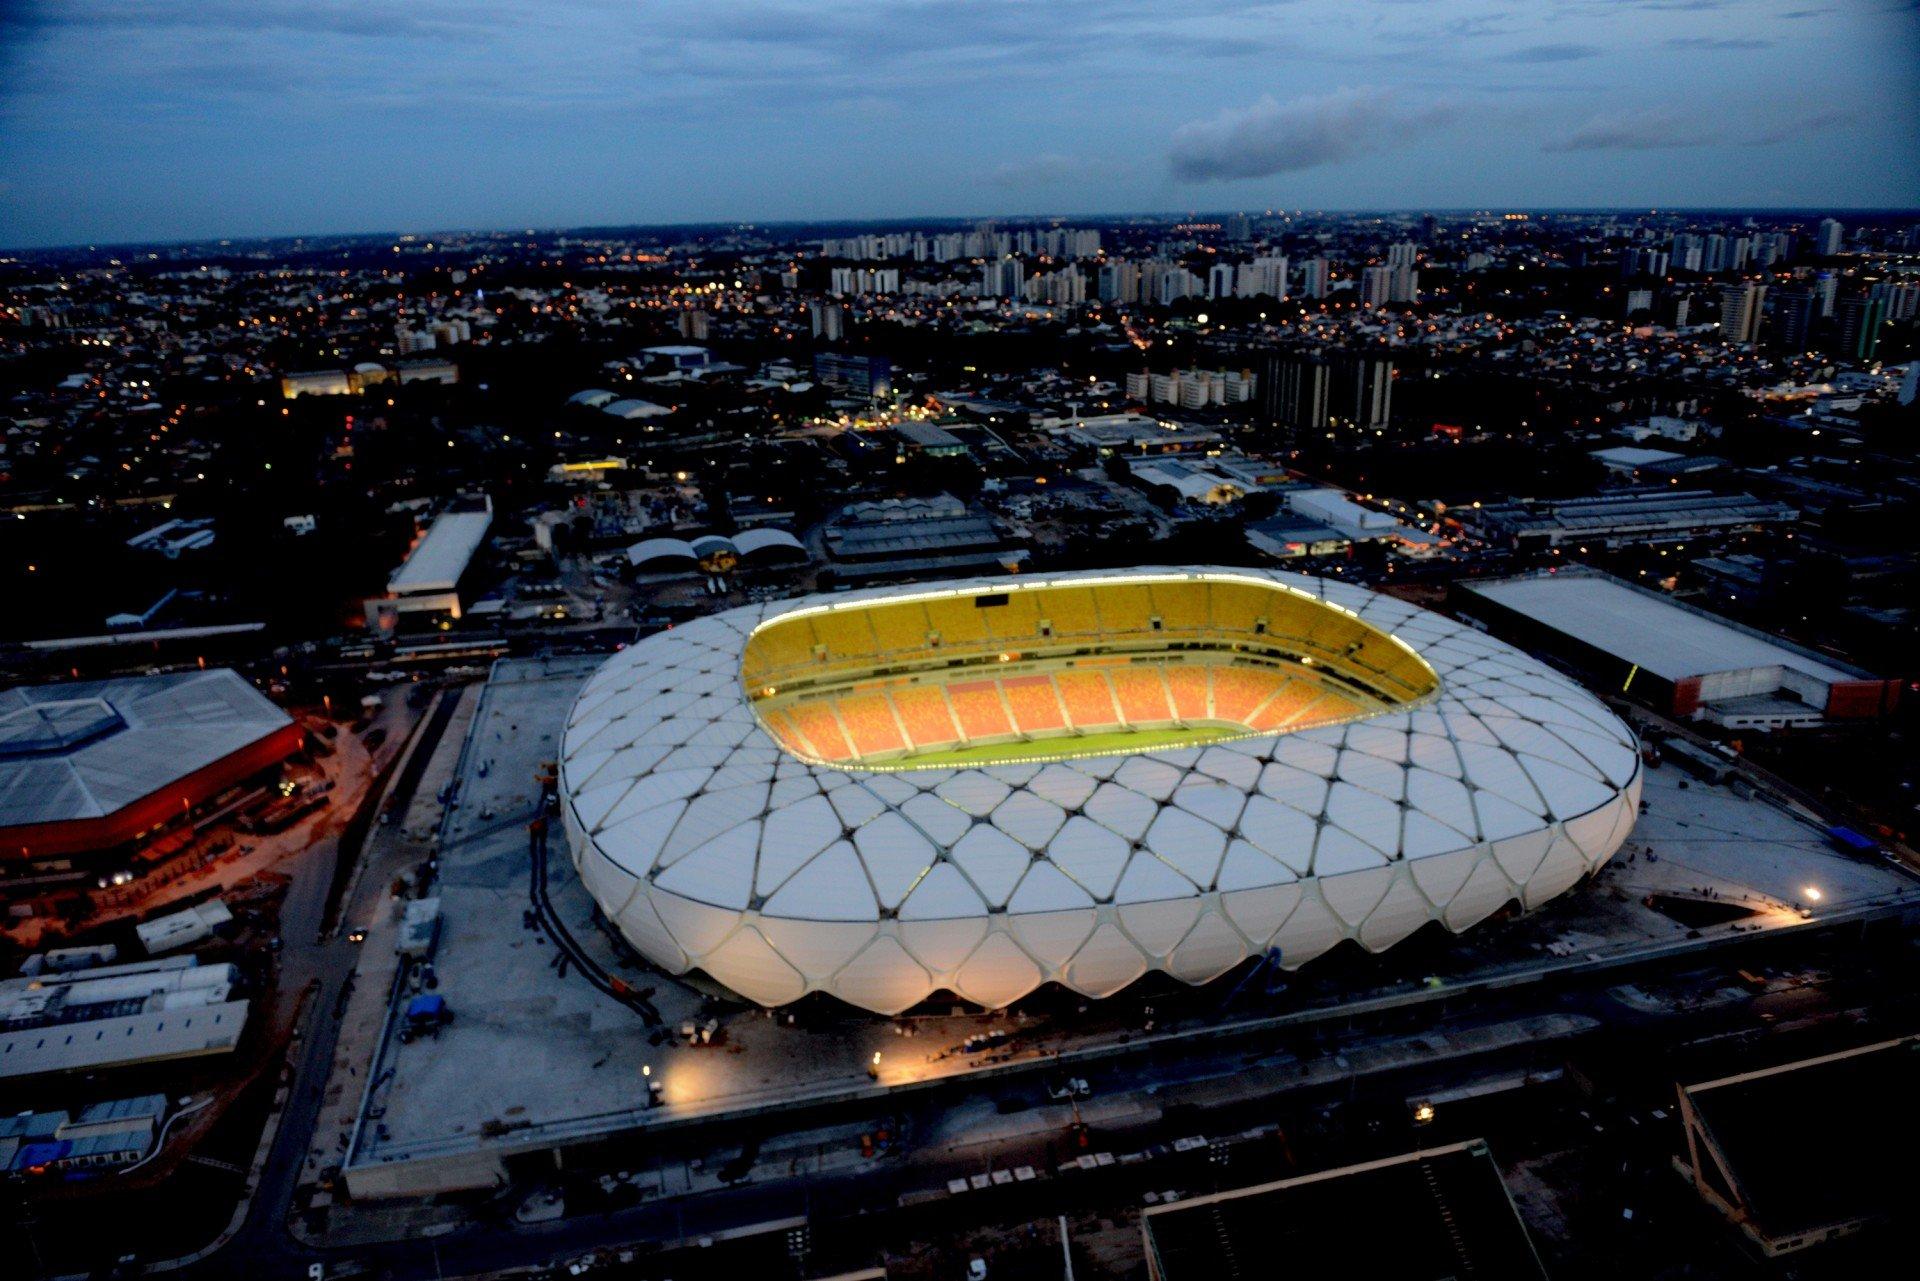 Copa do Mundo de Futebol - Rio 2014